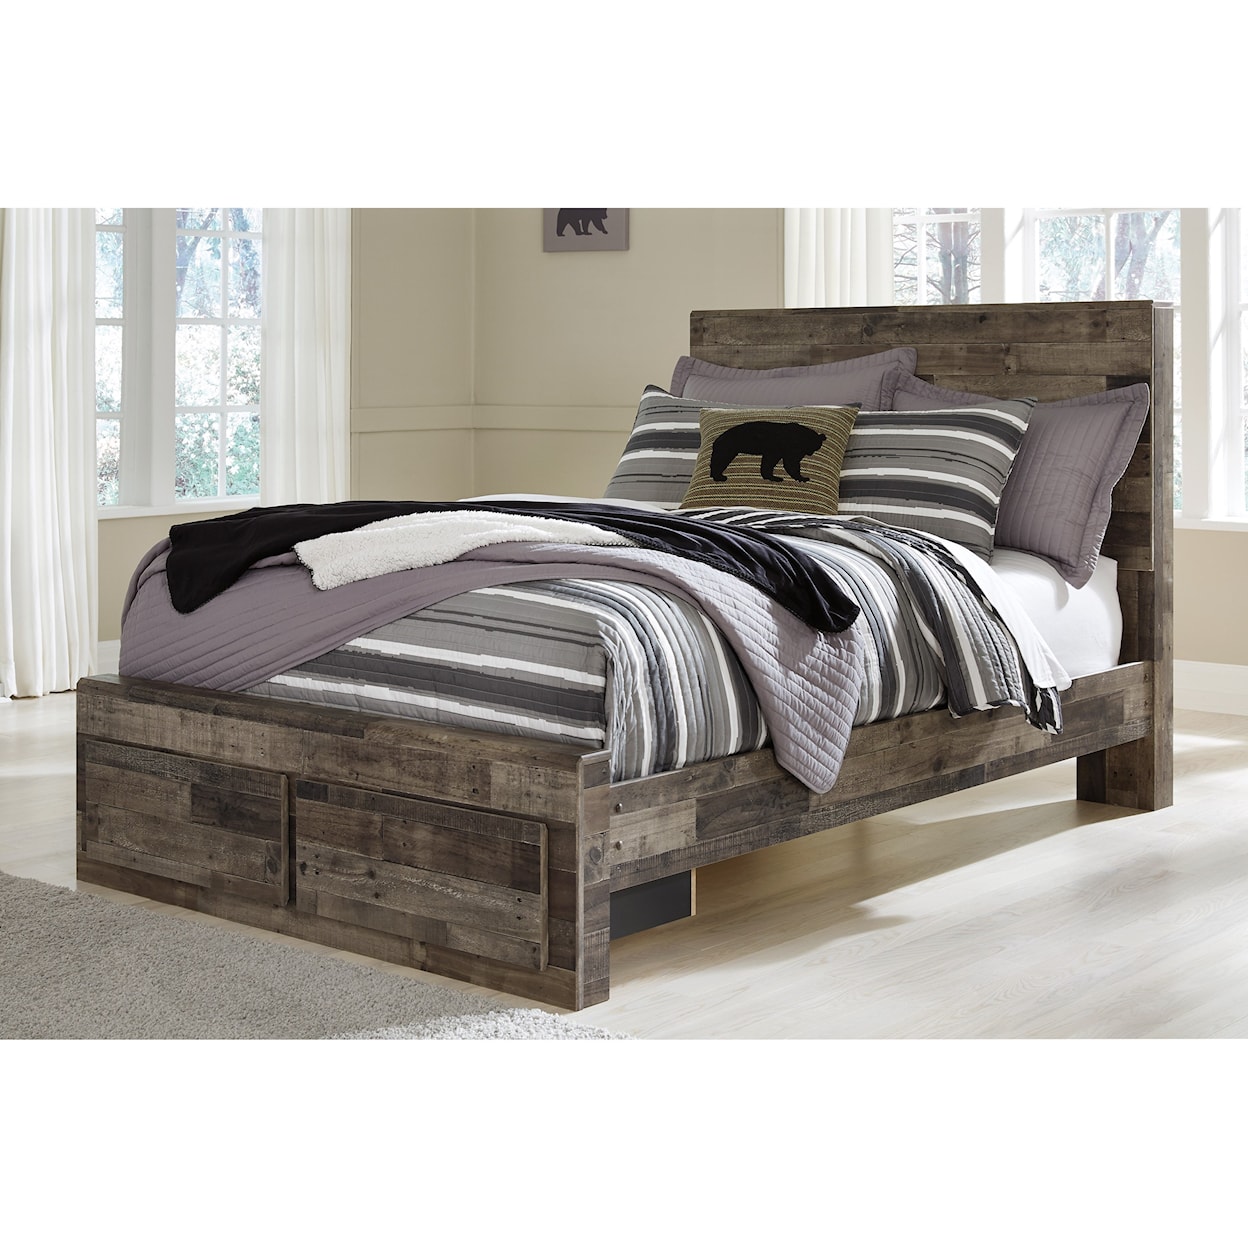 Ashley Furniture Benchcraft Derekson Full Storage Bed